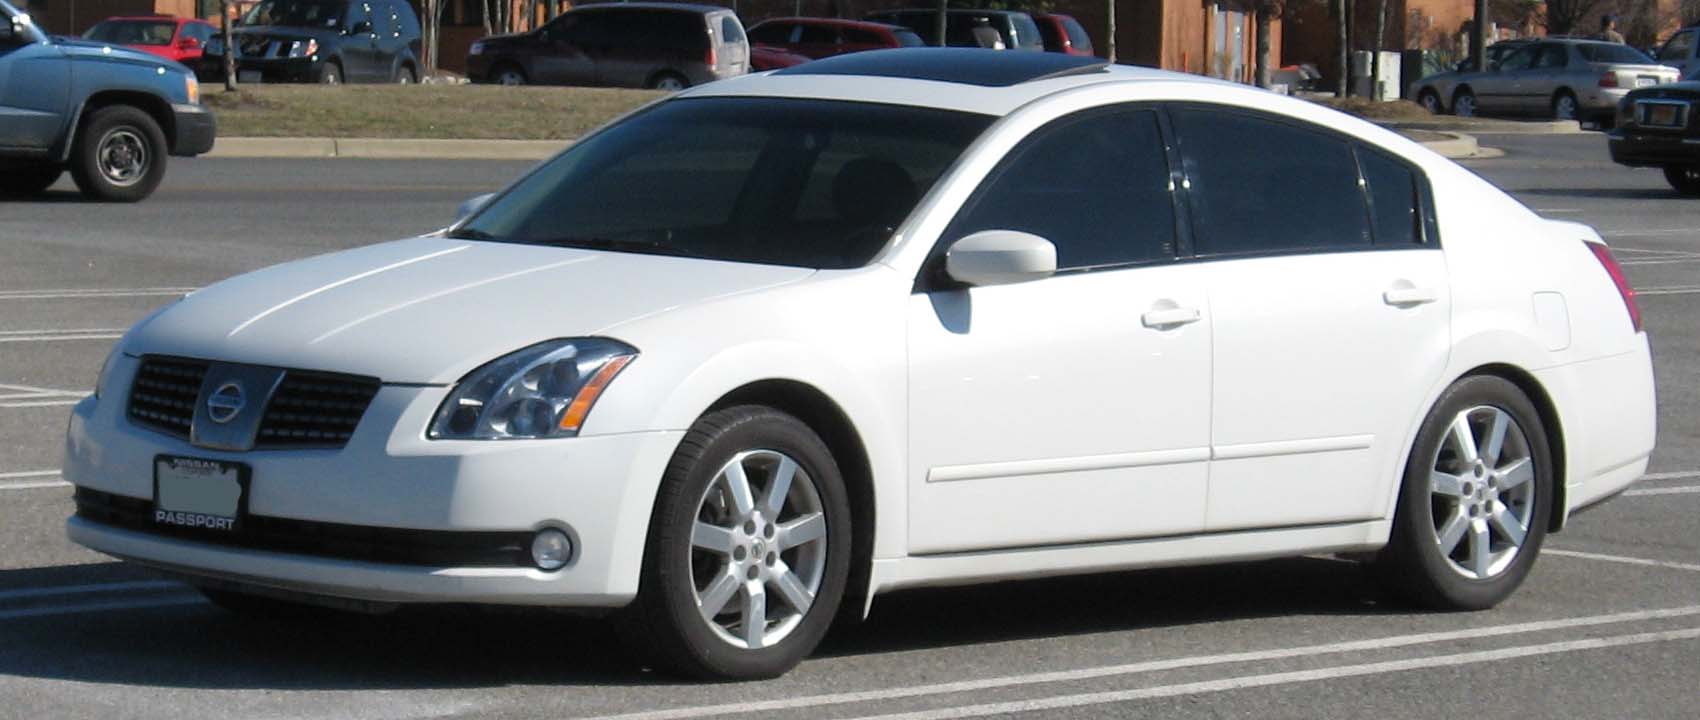 Nissan Maxima 2006 #6